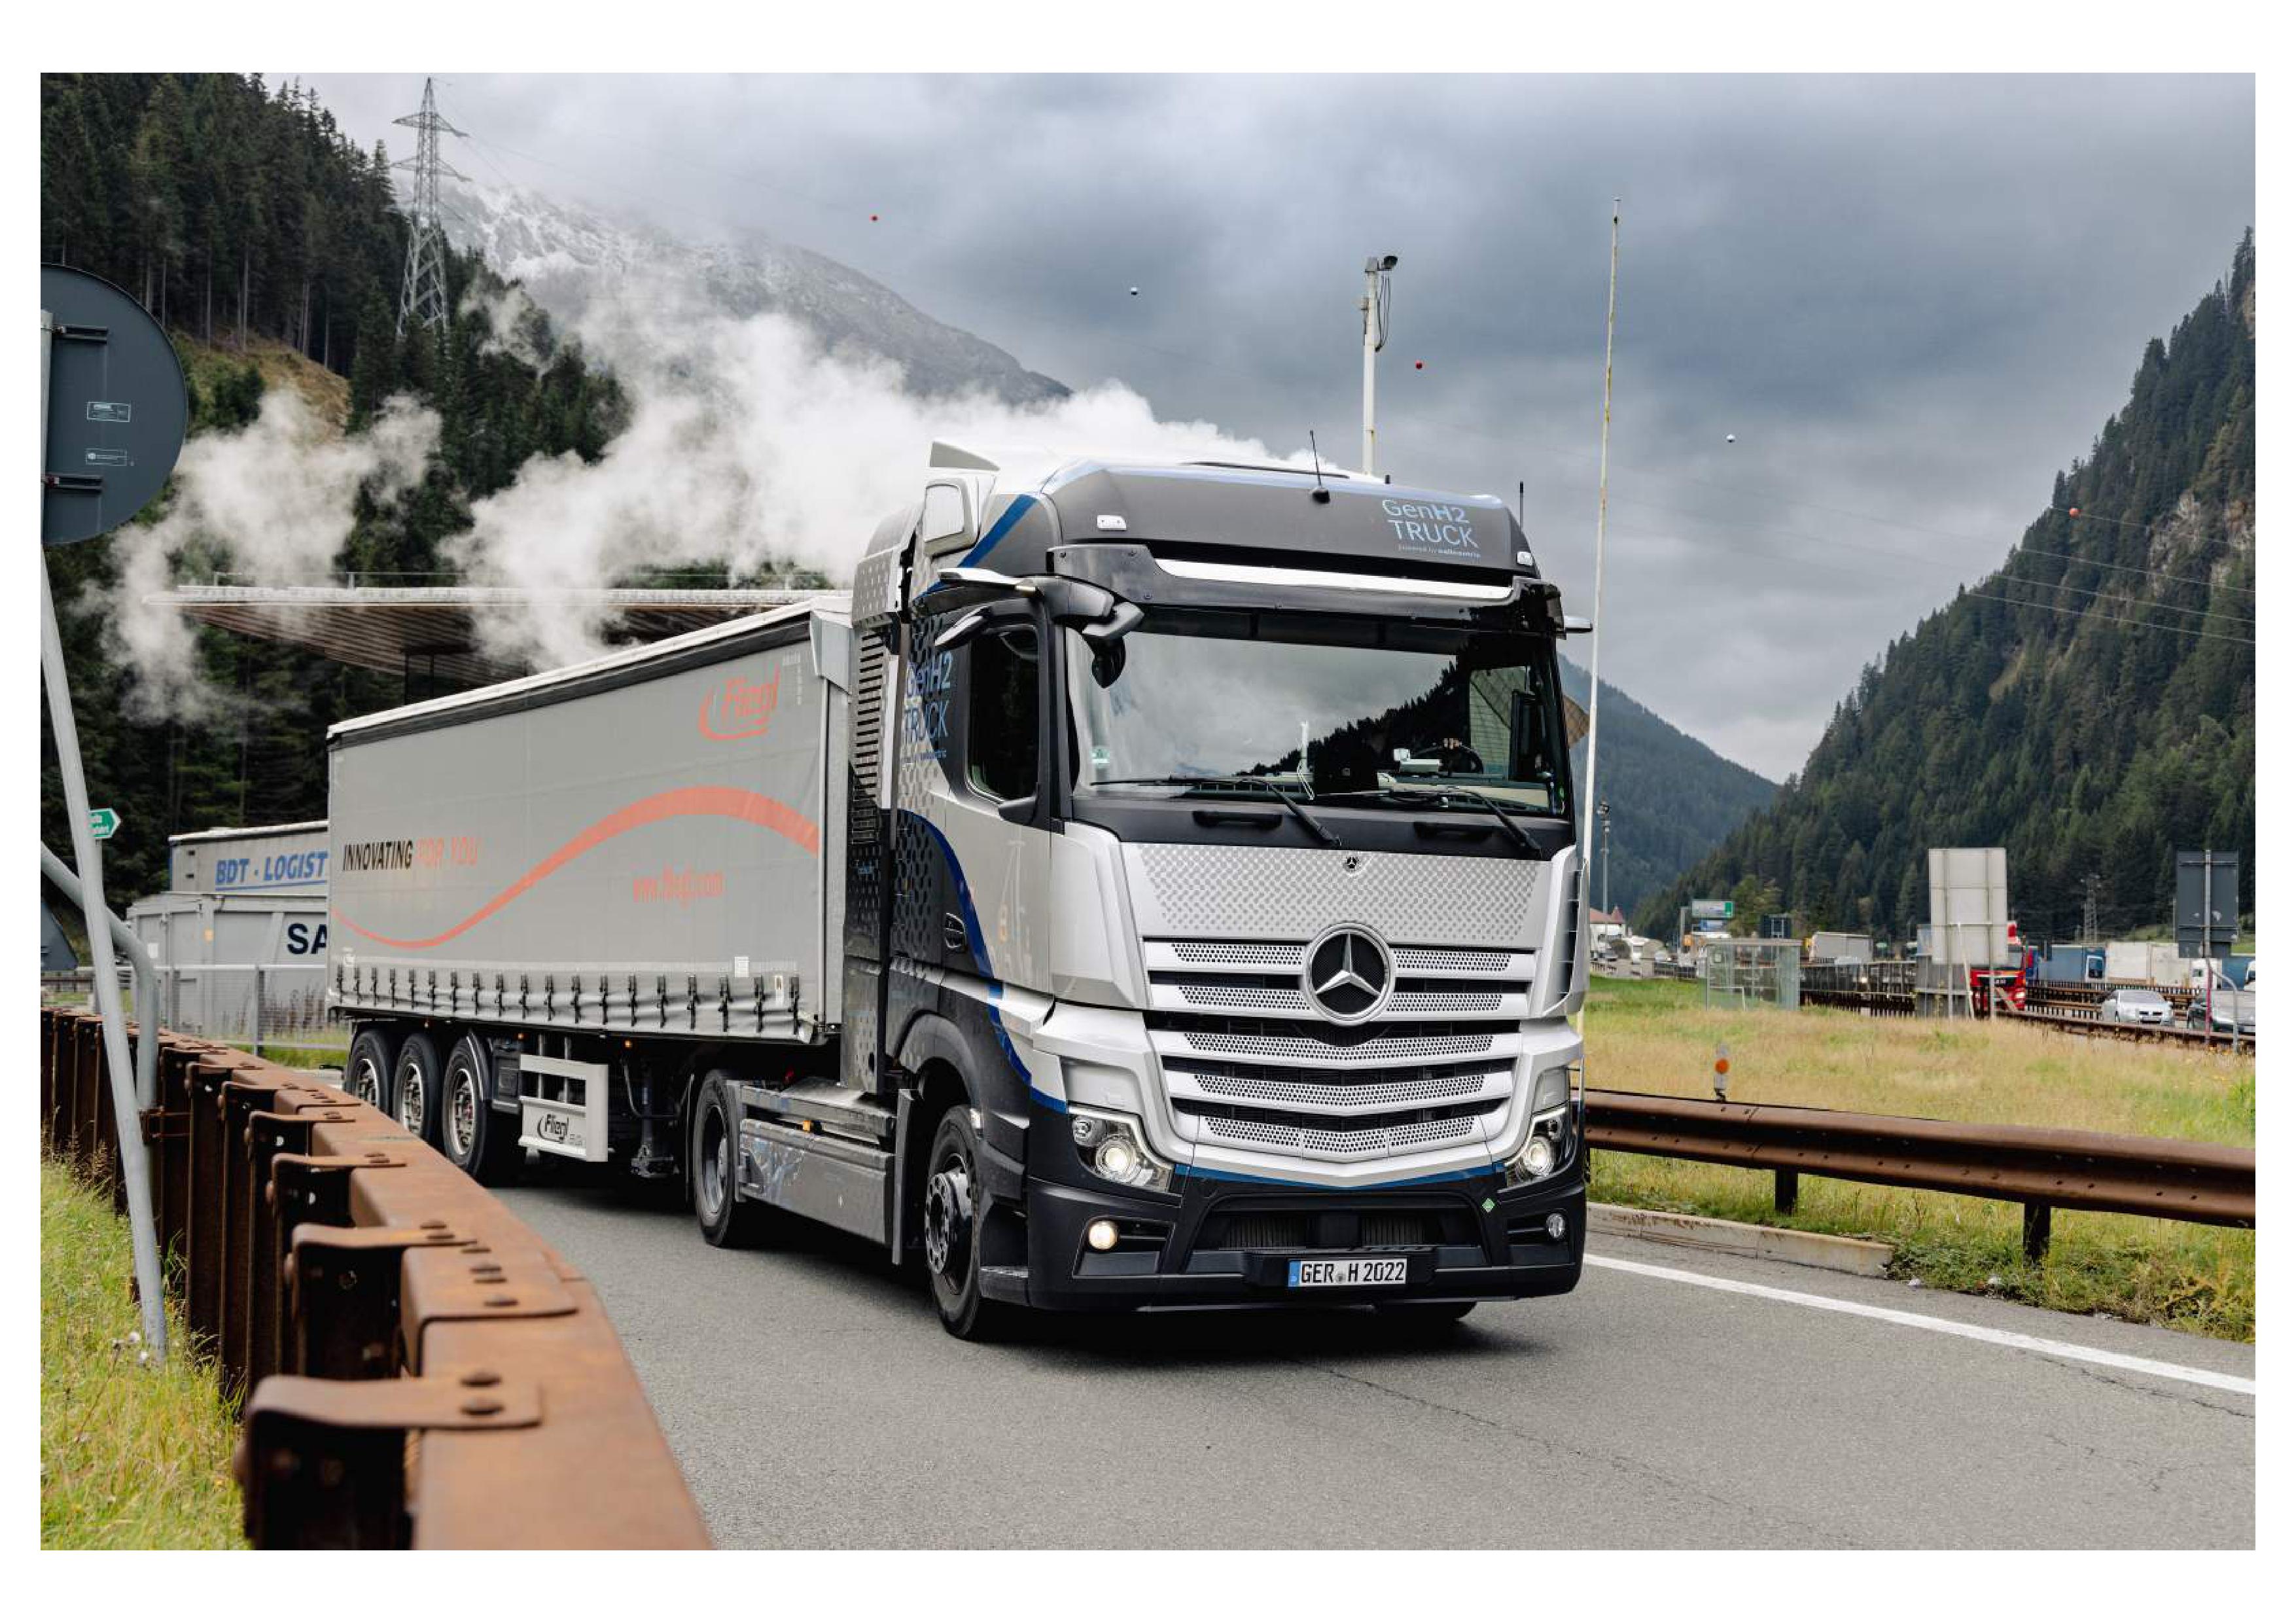 Daimler Truck realiza primeiros testes de altitude com caminhão de célula de combustível